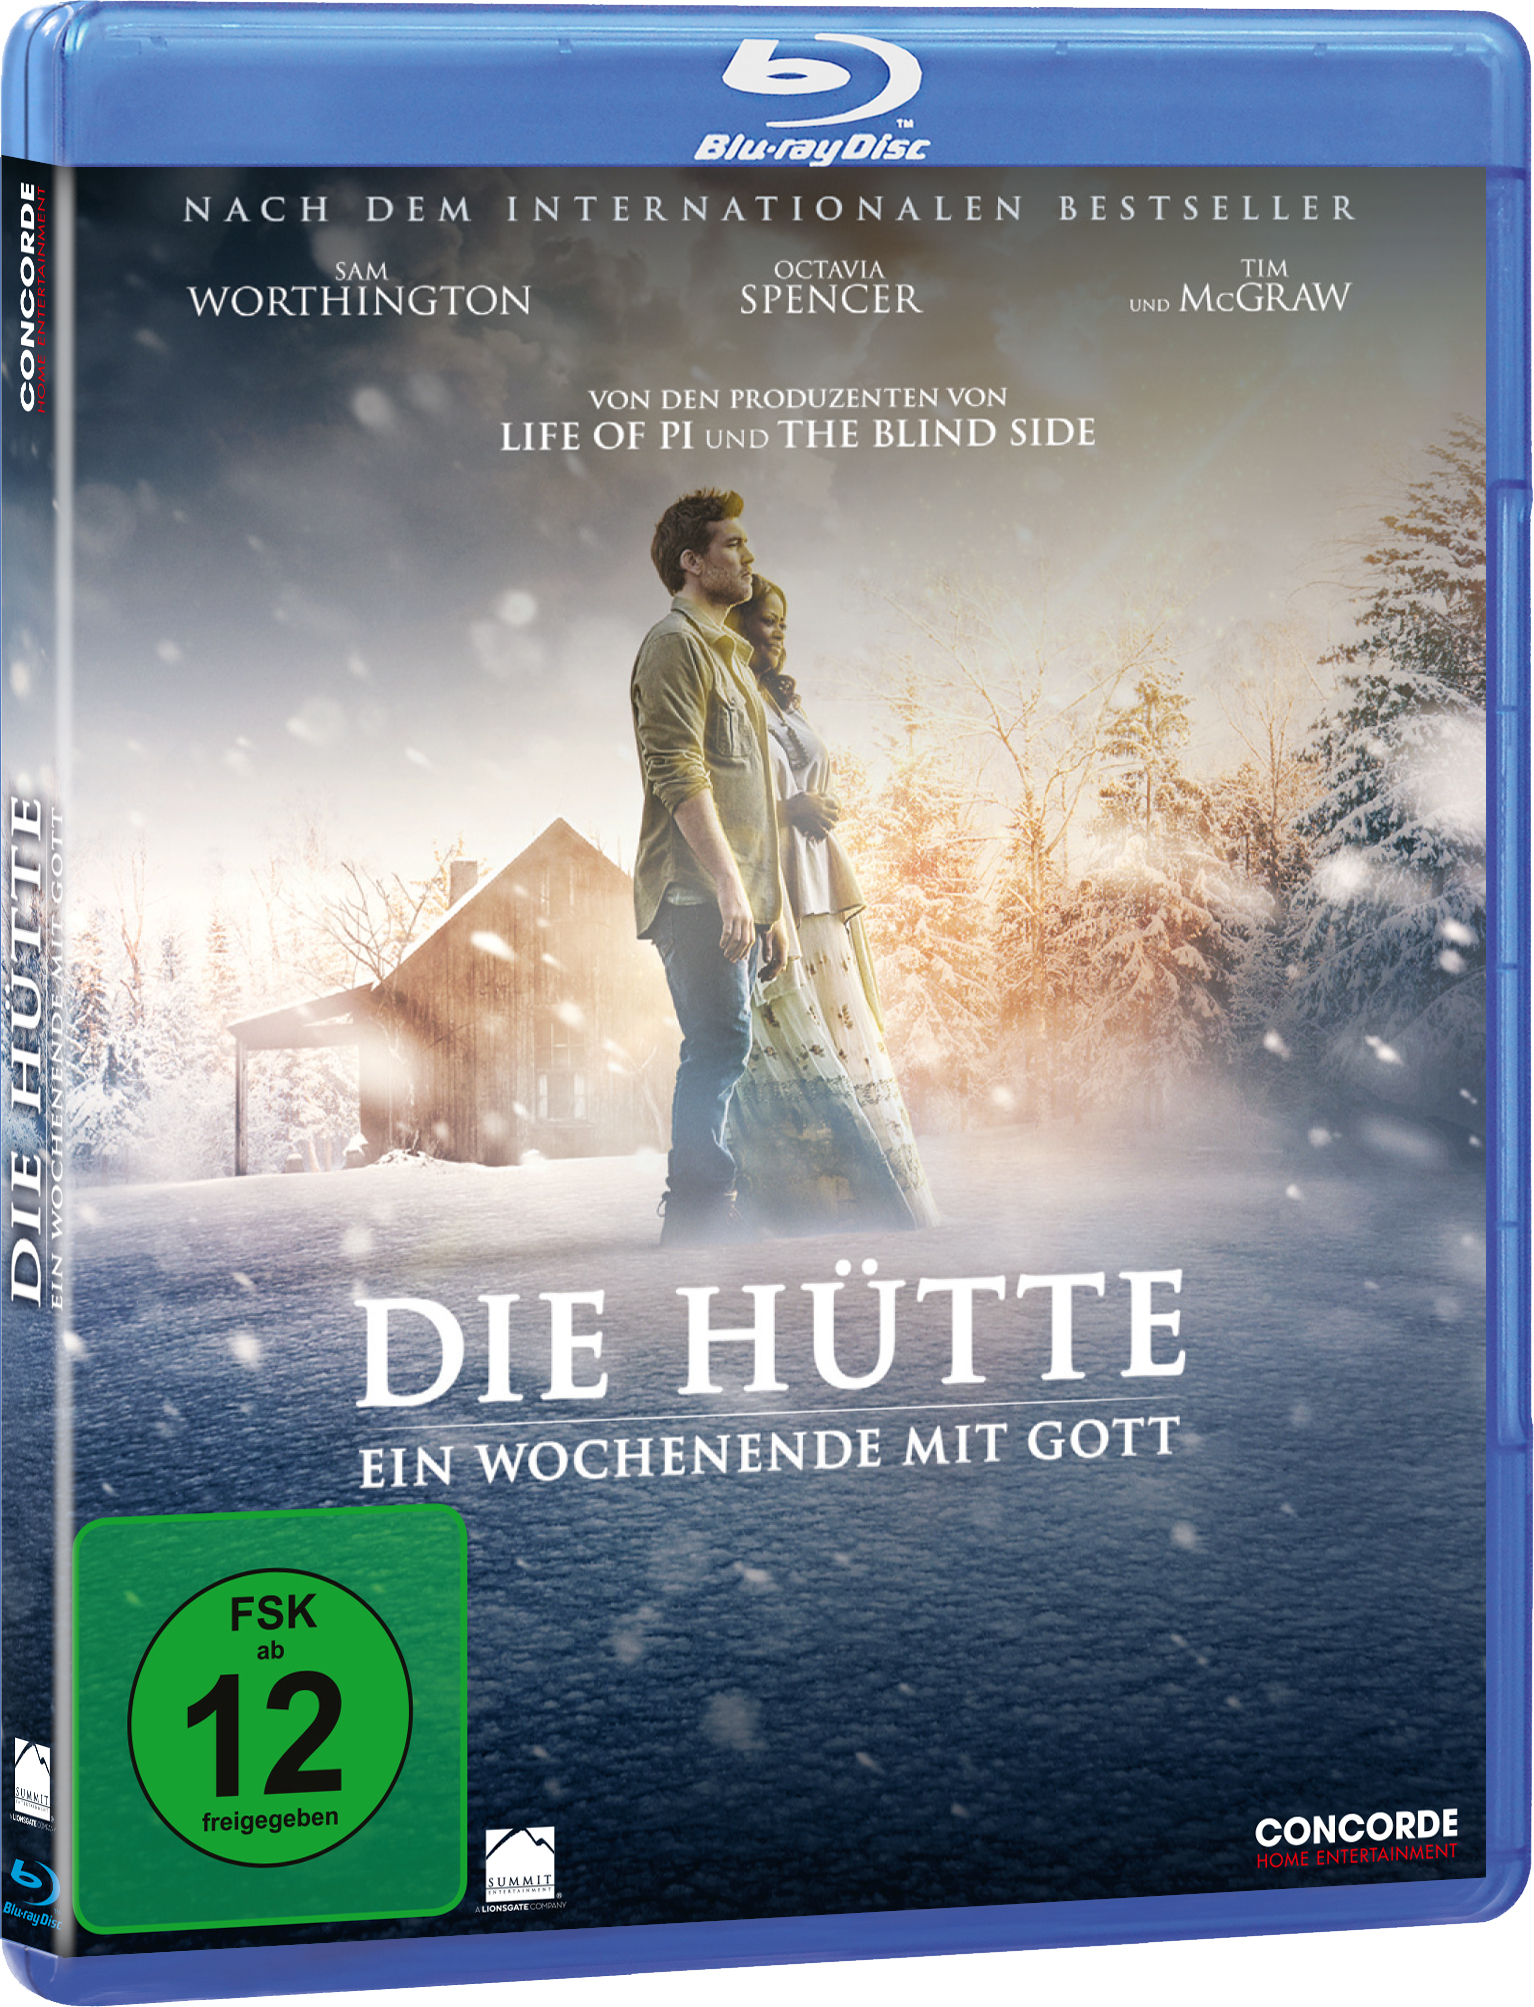 Die Hütte - Gott Wochenende Ein Blu-ray mit